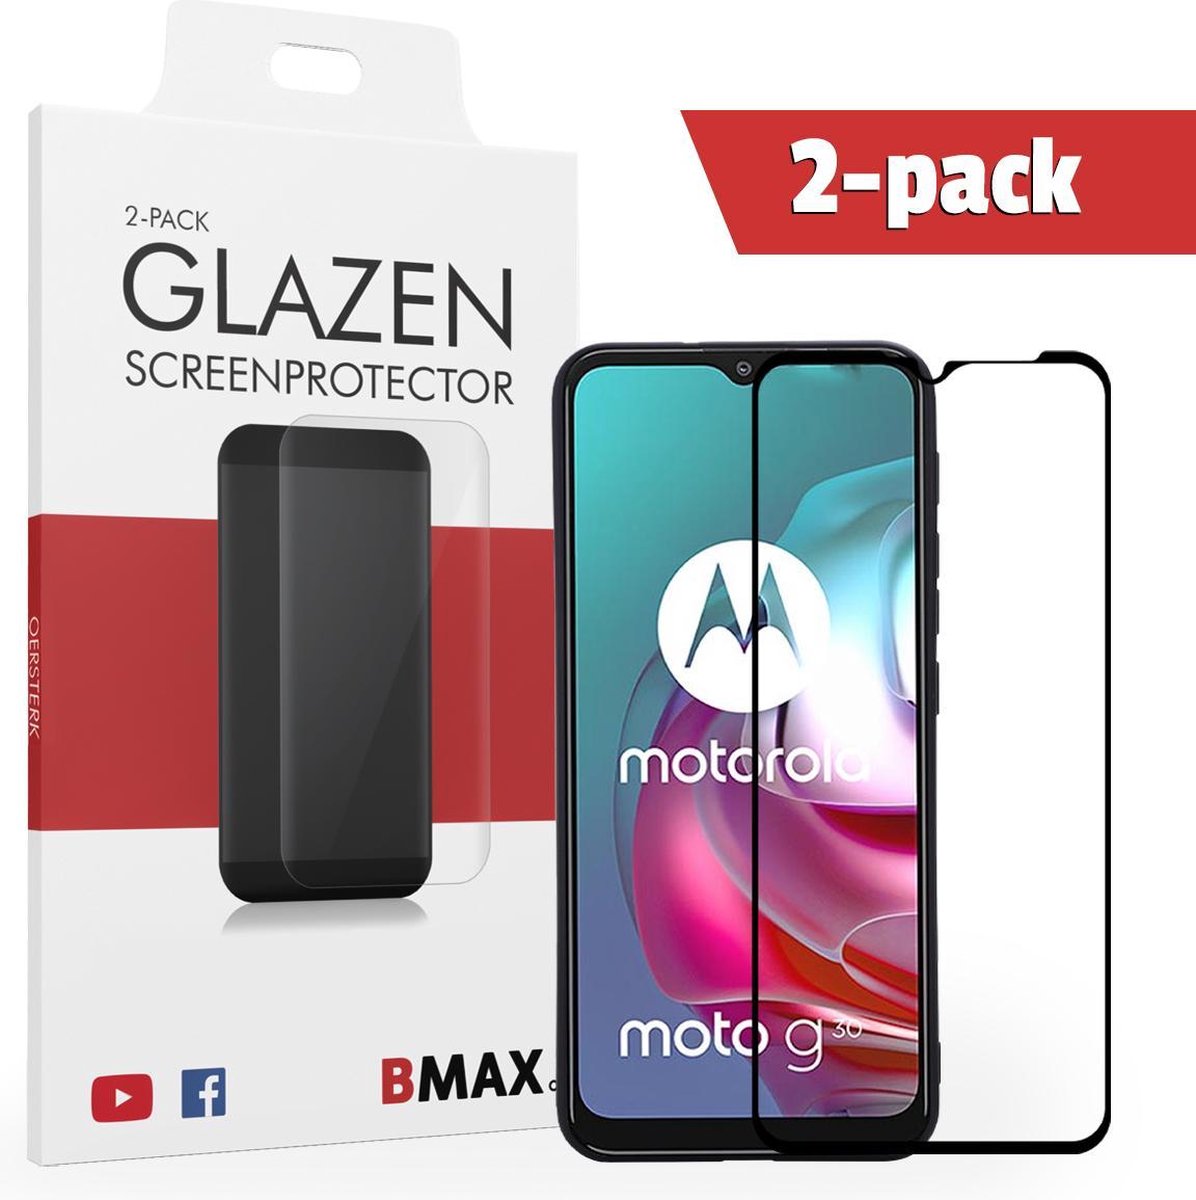 2-pack Bmax Motorola Moto G30 Screenprotector - Glass - Full Cover 2.5d - Black